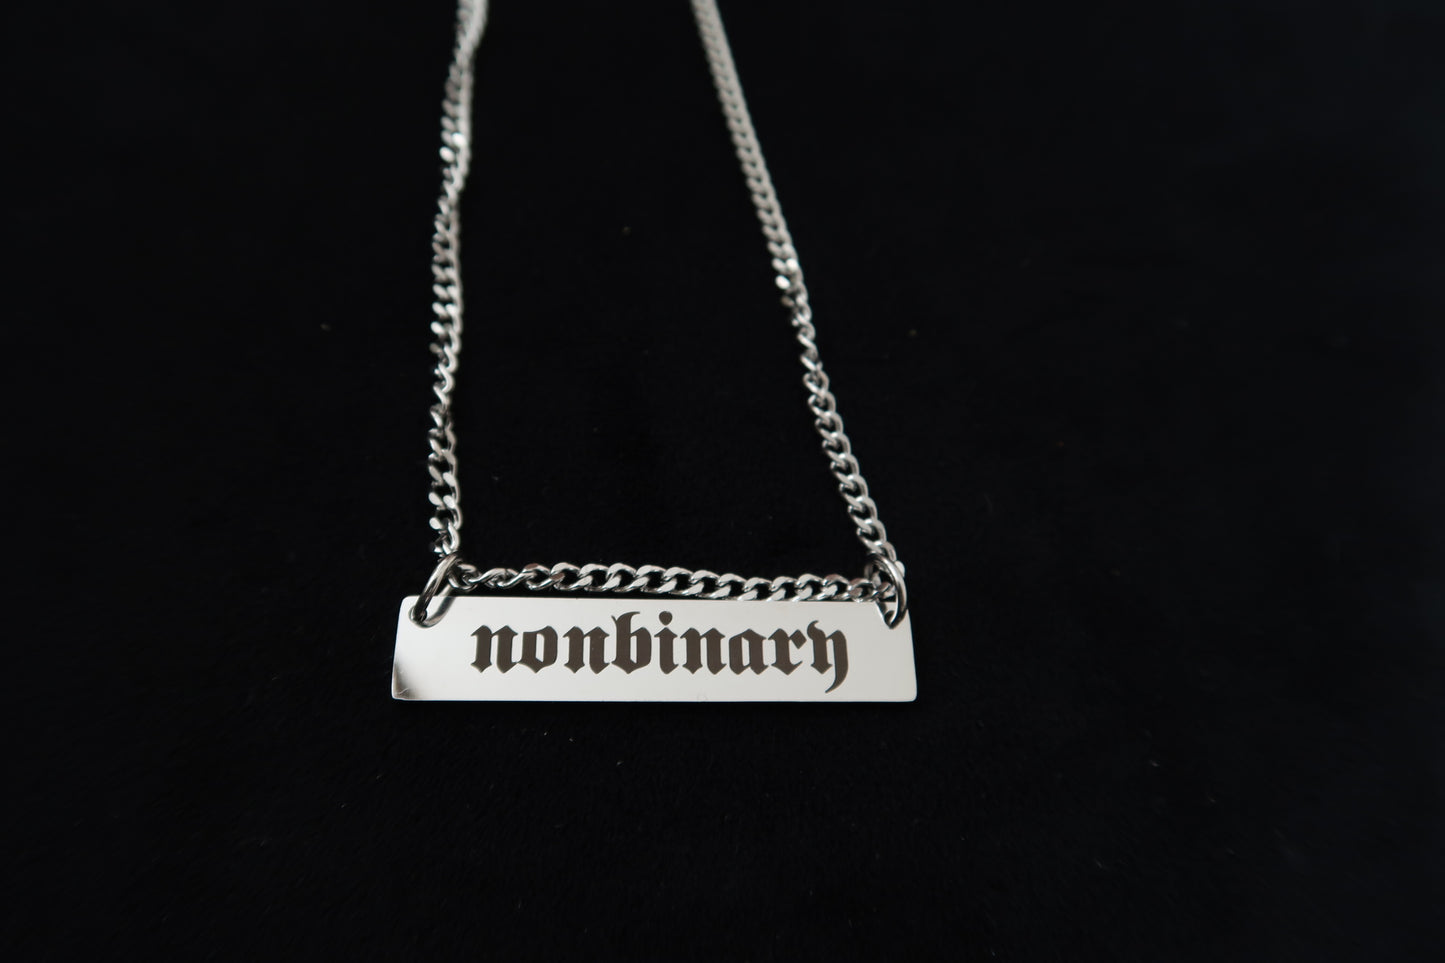 nonbinary chain necklace